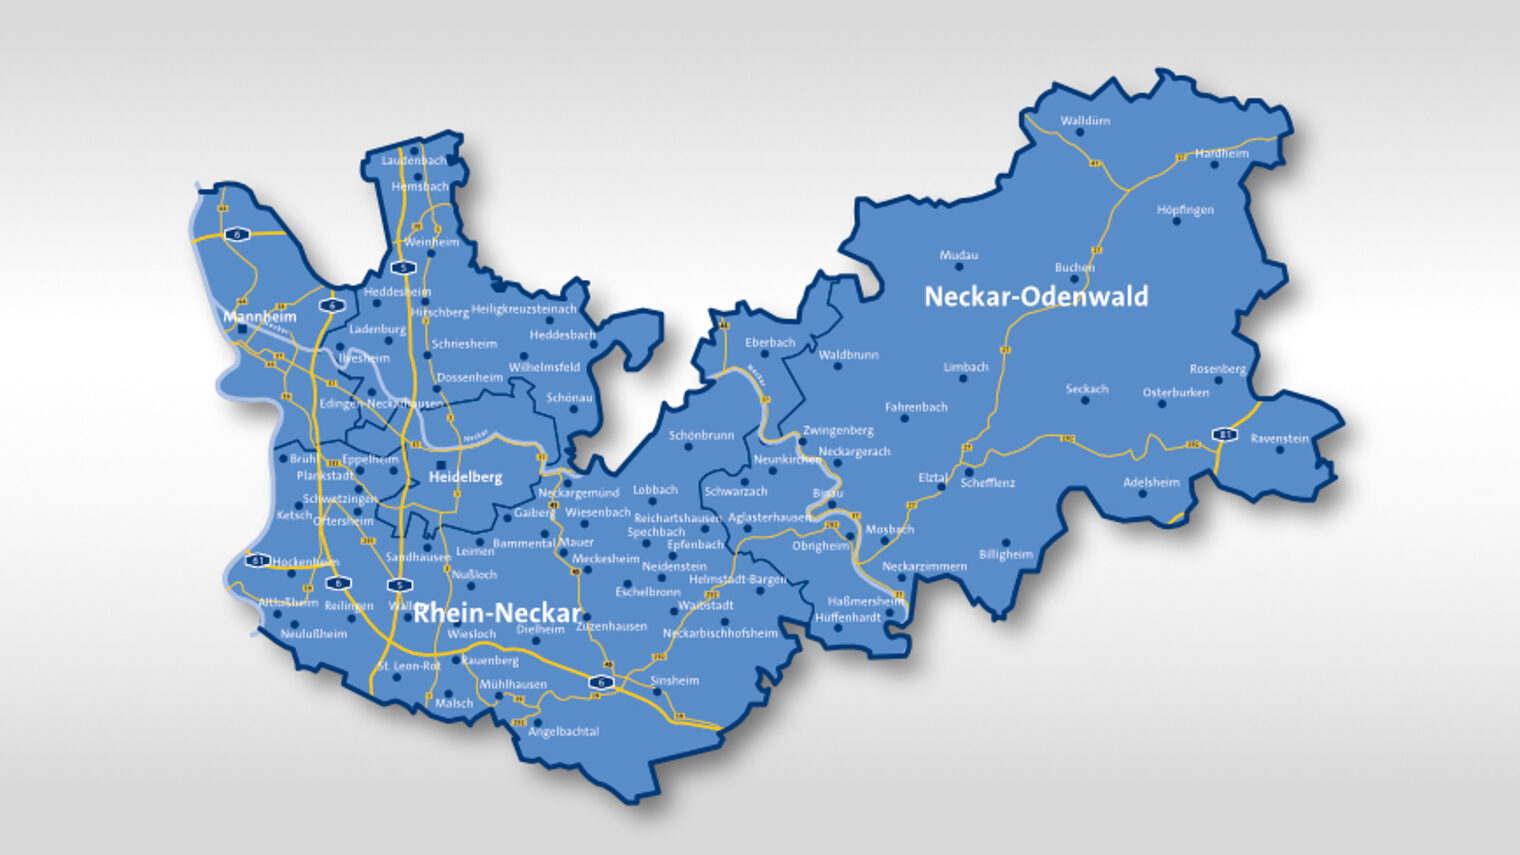 Landkarte: Region Mannheim Rhein Neckar Odenwald in blau gehalten, eingeteilt in die Landkreise Rhein-Neckar und Neckar-Odenwald und die Stadtkreise Heidelberg und Mannheim 